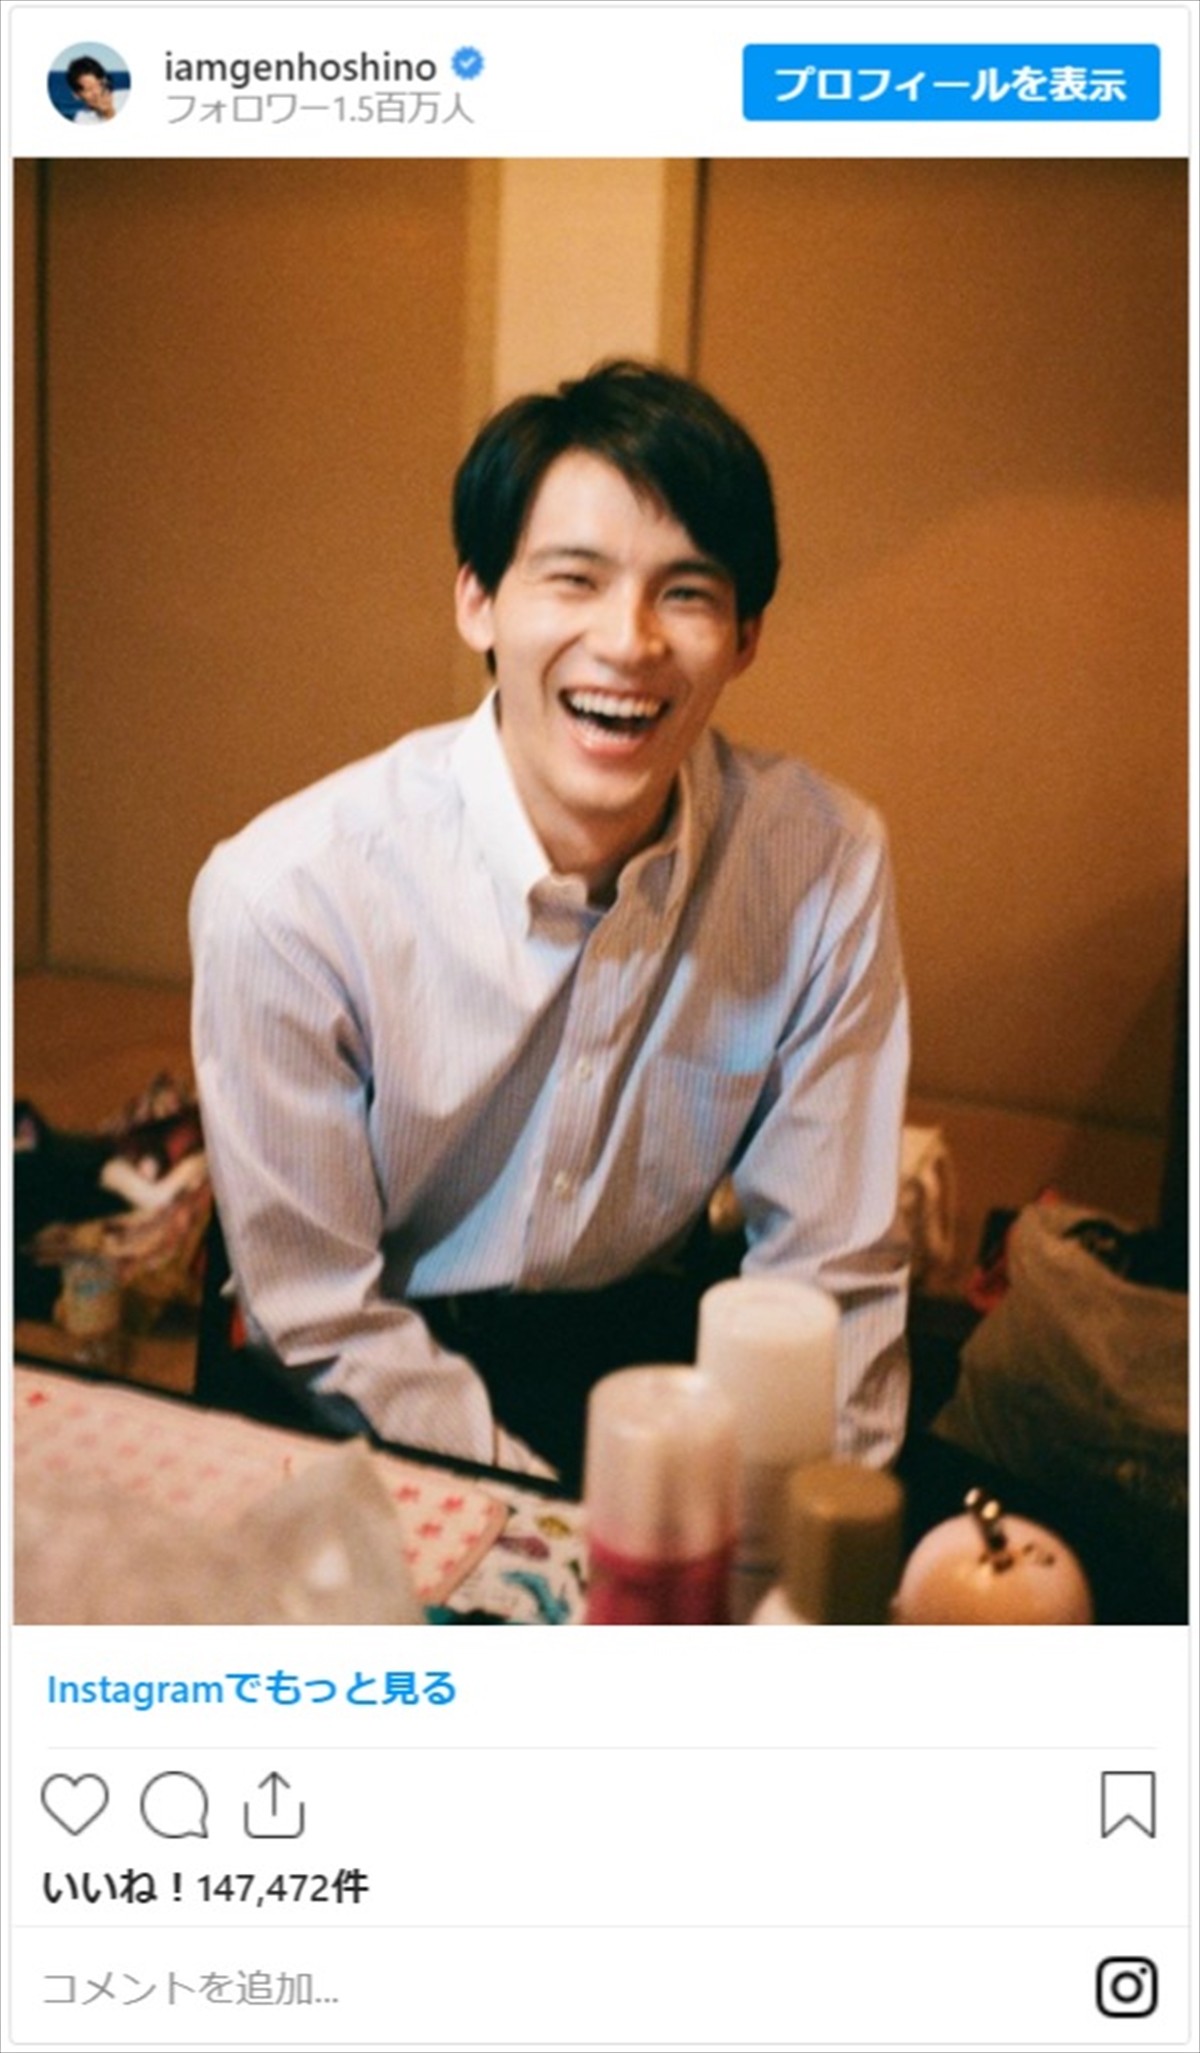 星野源カメラマン、岡田健史のはじける笑顔を撮影　ネット「幸せな気分になる」